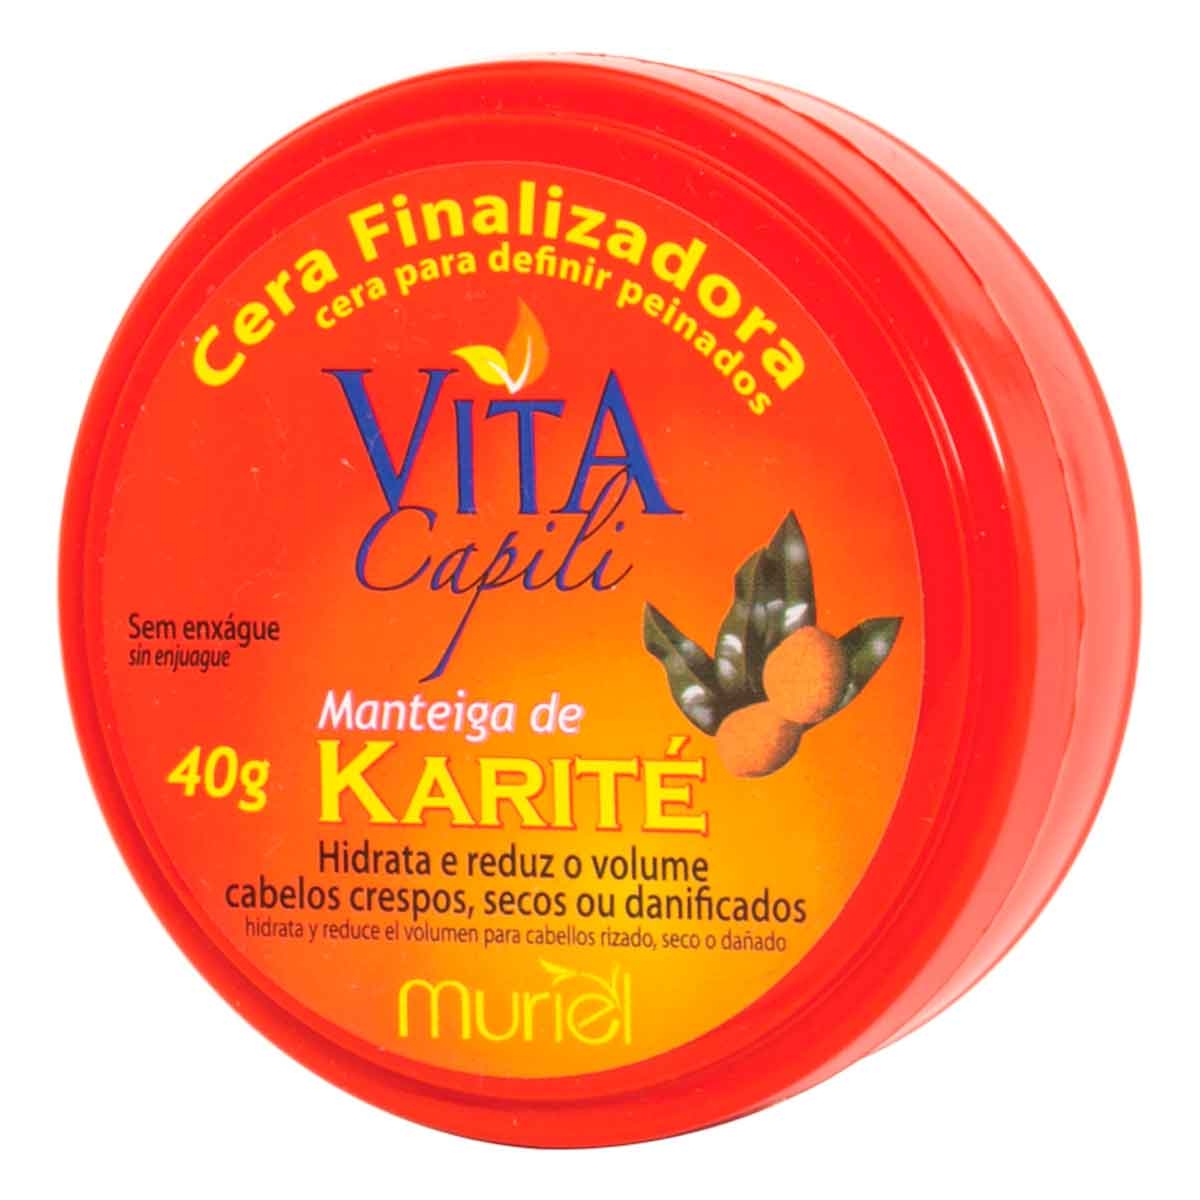 Cera Finalizadora Capilar Vita Capili Manteiga de Karité com 40g Multilaser 40g